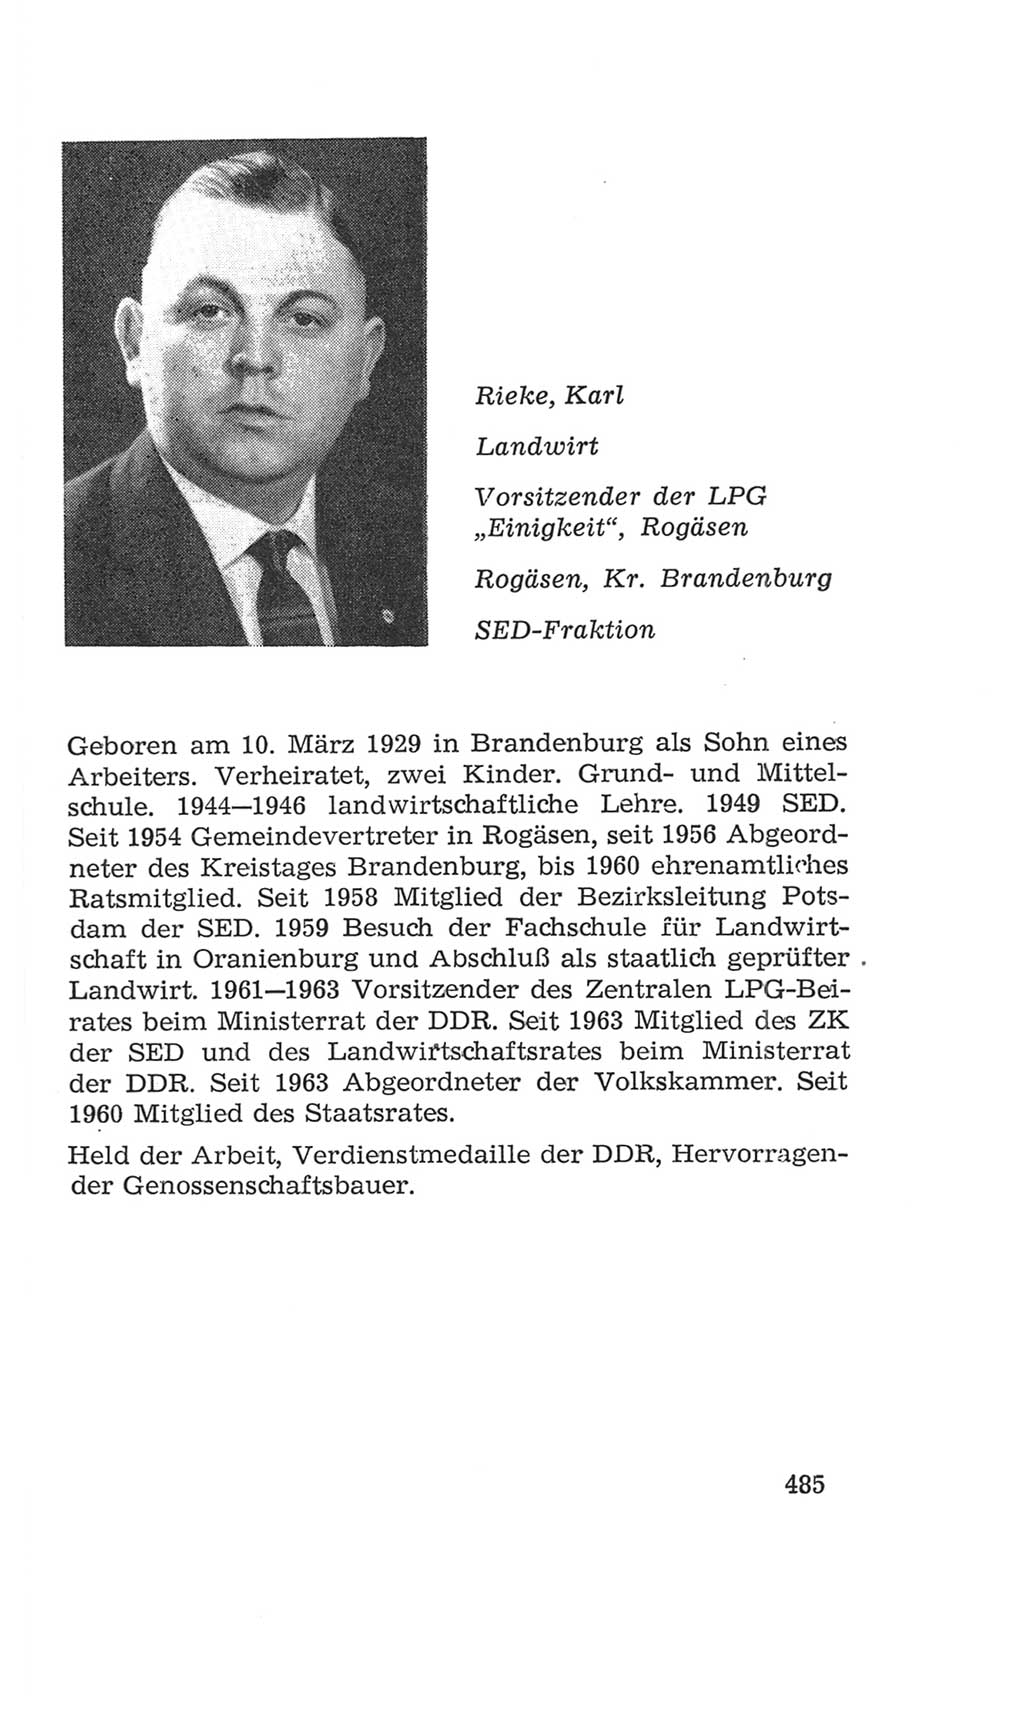 Volkskammer (VK) der Deutschen Demokratischen Republik (DDR), 4. Wahlperiode 1963-1967, Seite 485 (VK. DDR 4. WP. 1963-1967, S. 485)